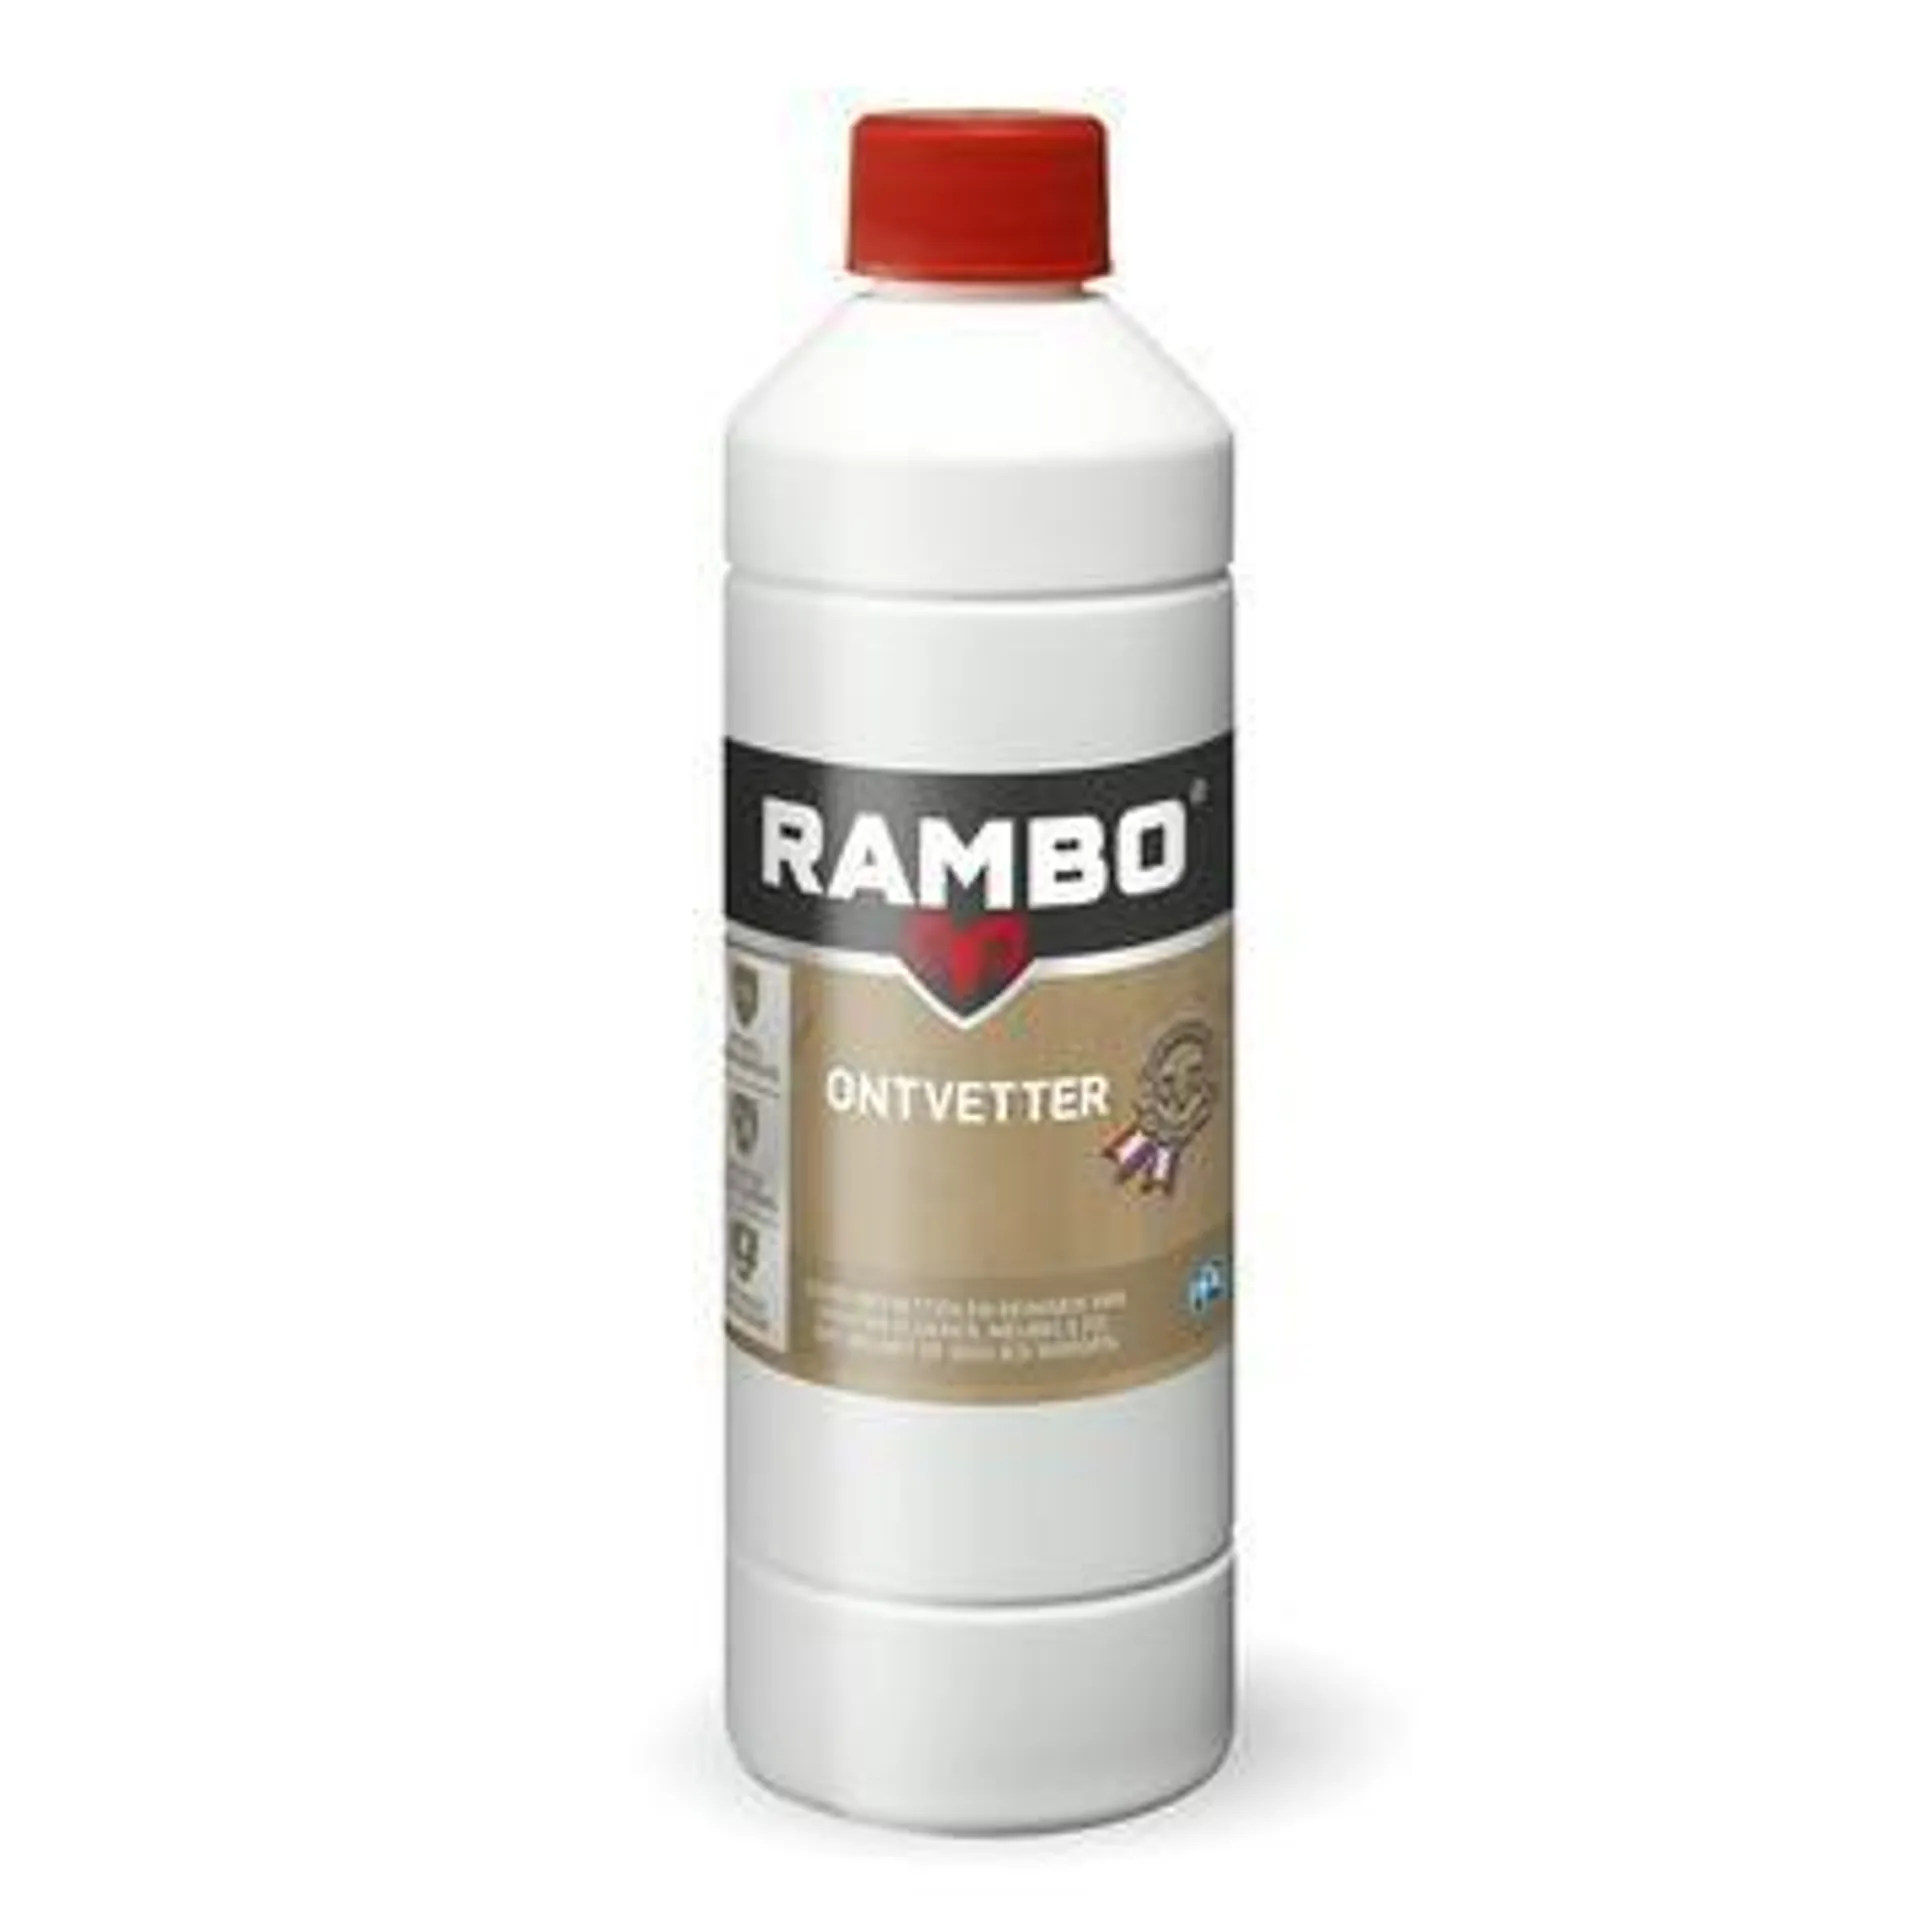 Rambo ontvetter kleurloos 500 ml